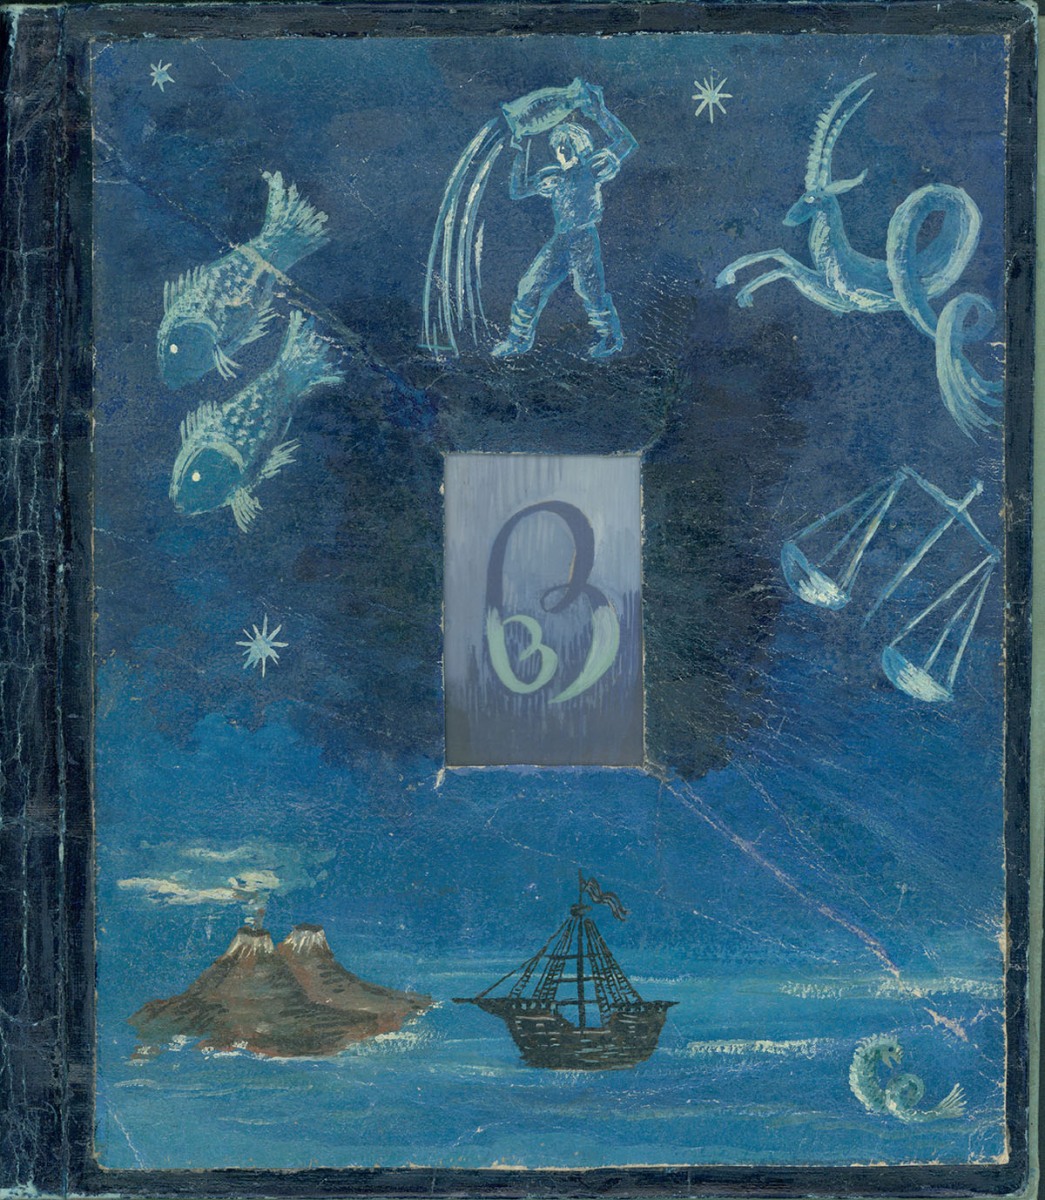 Na niebie ryby, wodnik, koziorożec i waga, w środku spleciony monogram BB, na morzu 2 wyspy i statek 